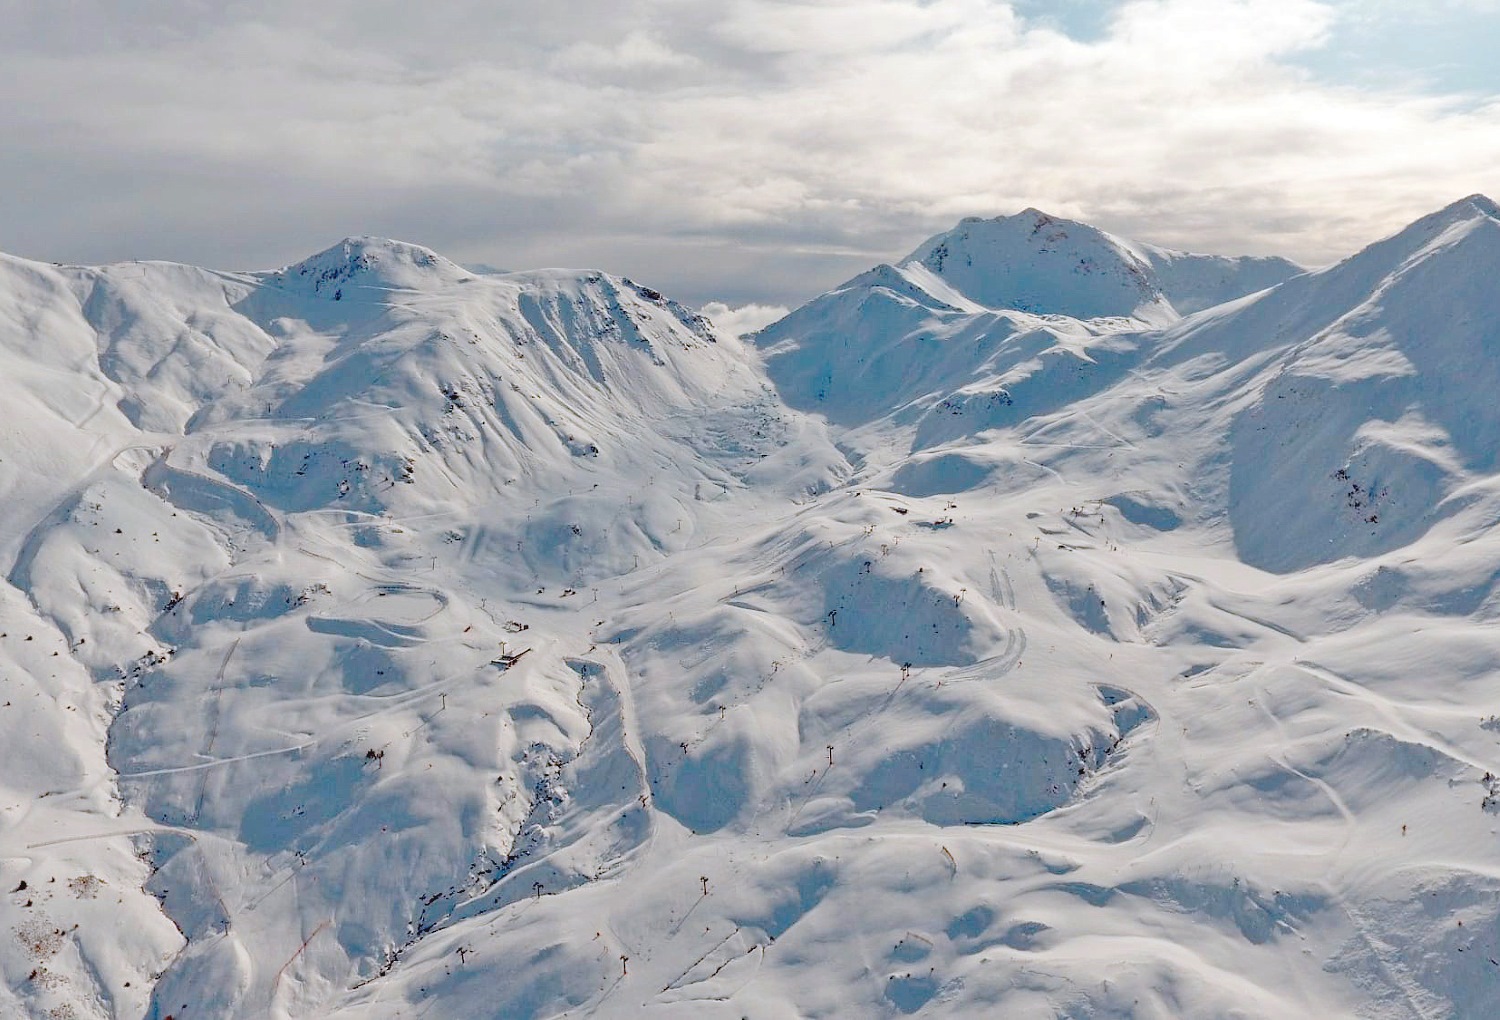 Boí Taüll inicia la temporada el sábado en forma: 28 km esquiables y hasta 90 cm de nieve